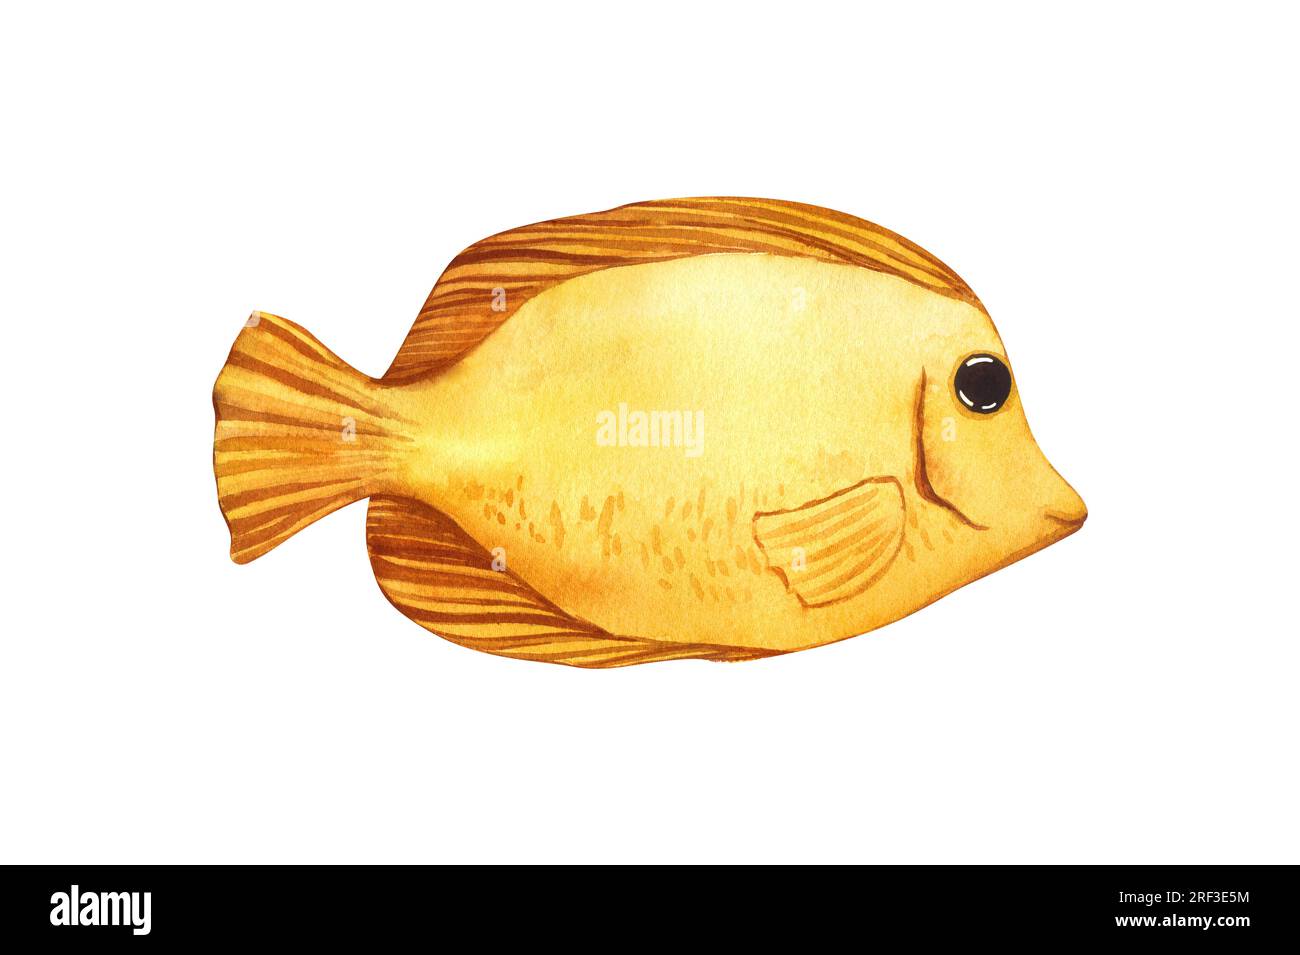 Aquarelle de poissons marins tropicaux jaune Tang.Hand dessin animé illustration d'animaux d'aquarium isolé sur fond blanc. Concept pour étiquette, bannière Banque D'Images